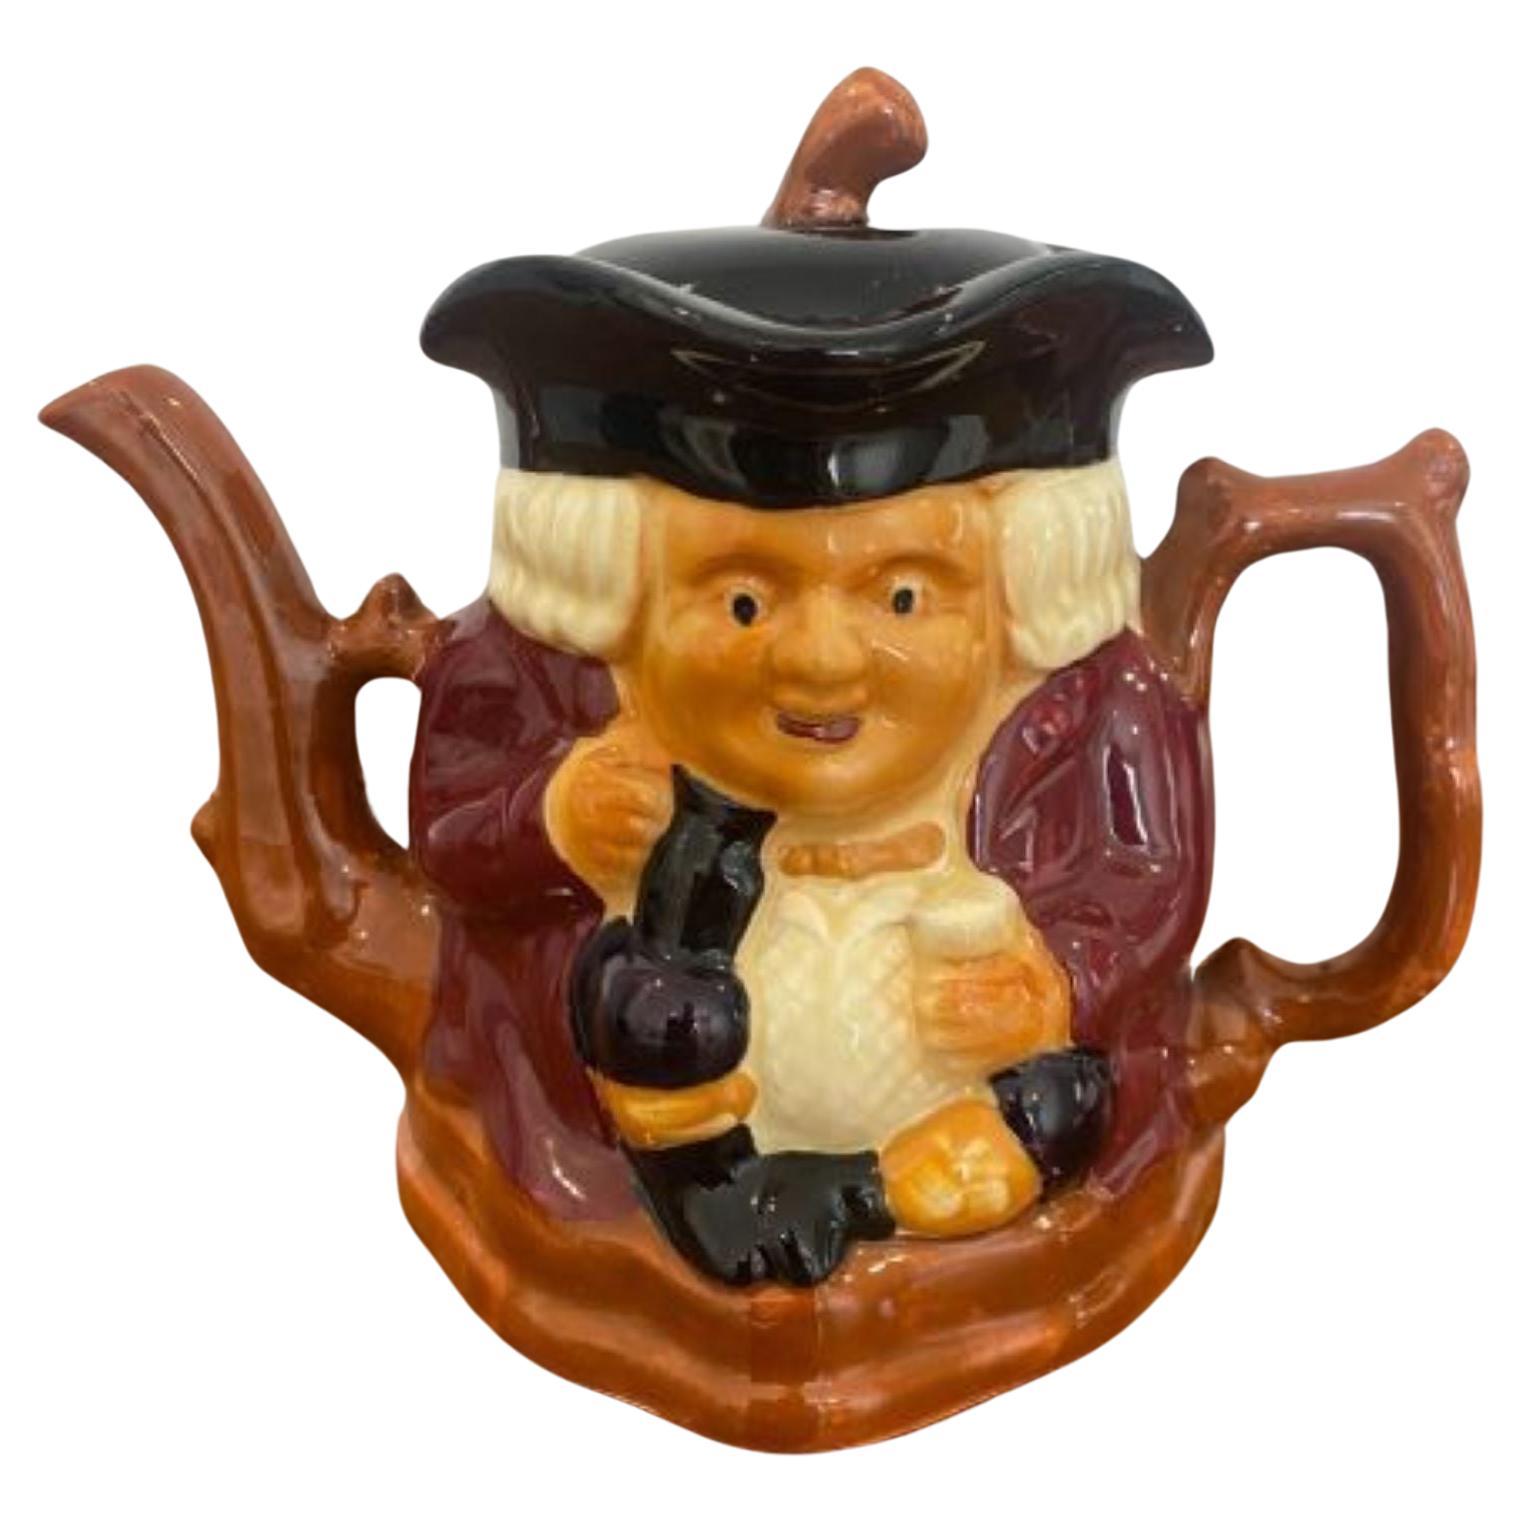 Unusual Antique Edwardian Toby Jug Teapot For Sale